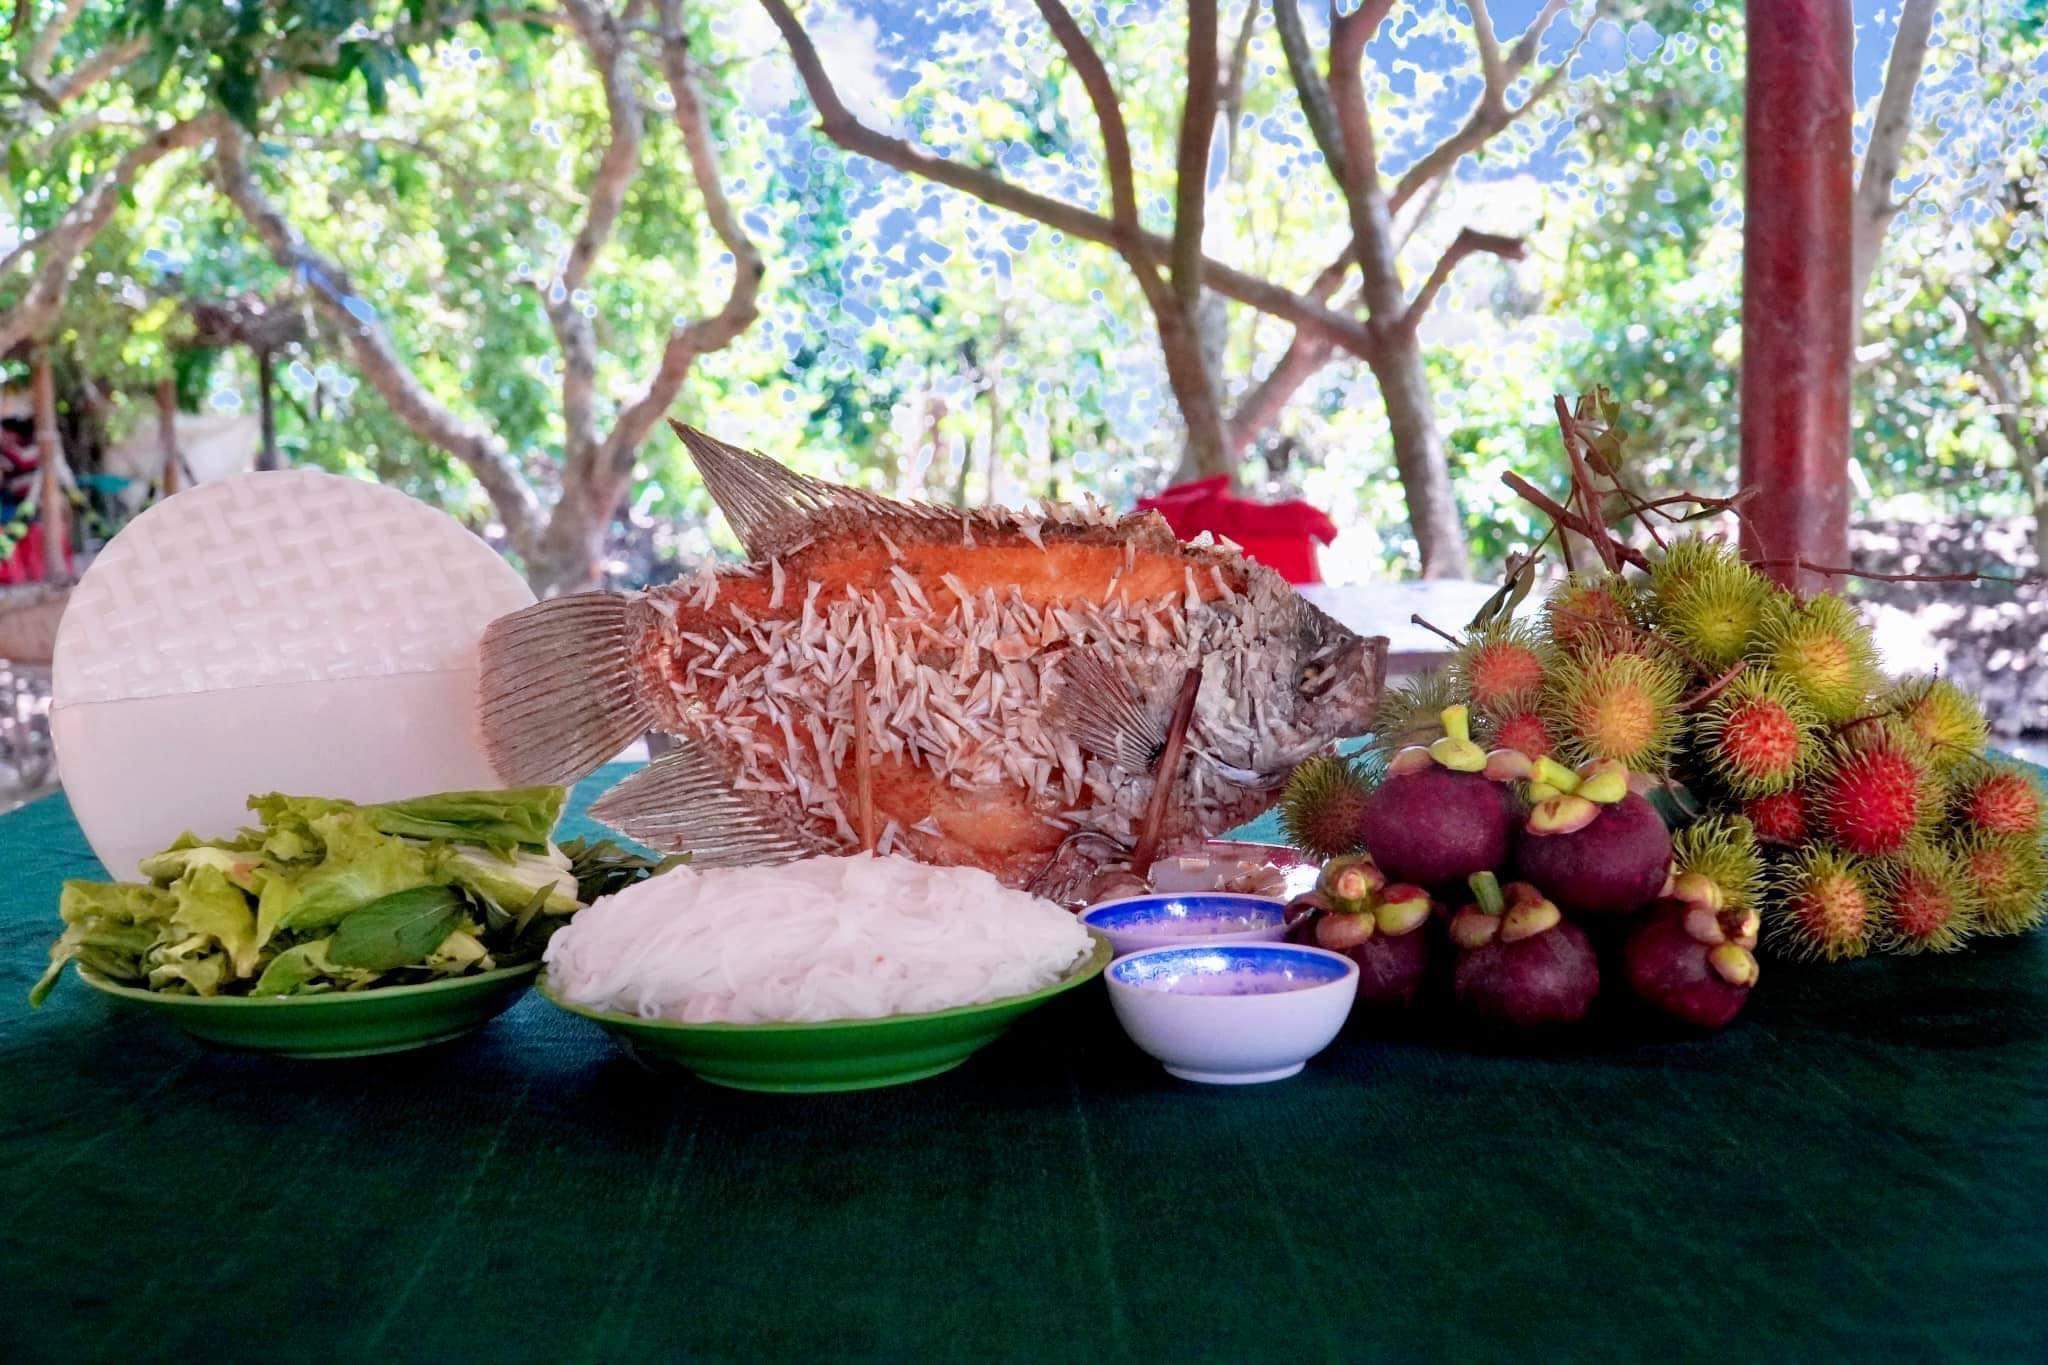 Những vườn trái cây sum sê, những món ăn dân dã đậm chất sông nước luôn thu hút du khách khi đến với Du lịch Vĩnh Long.